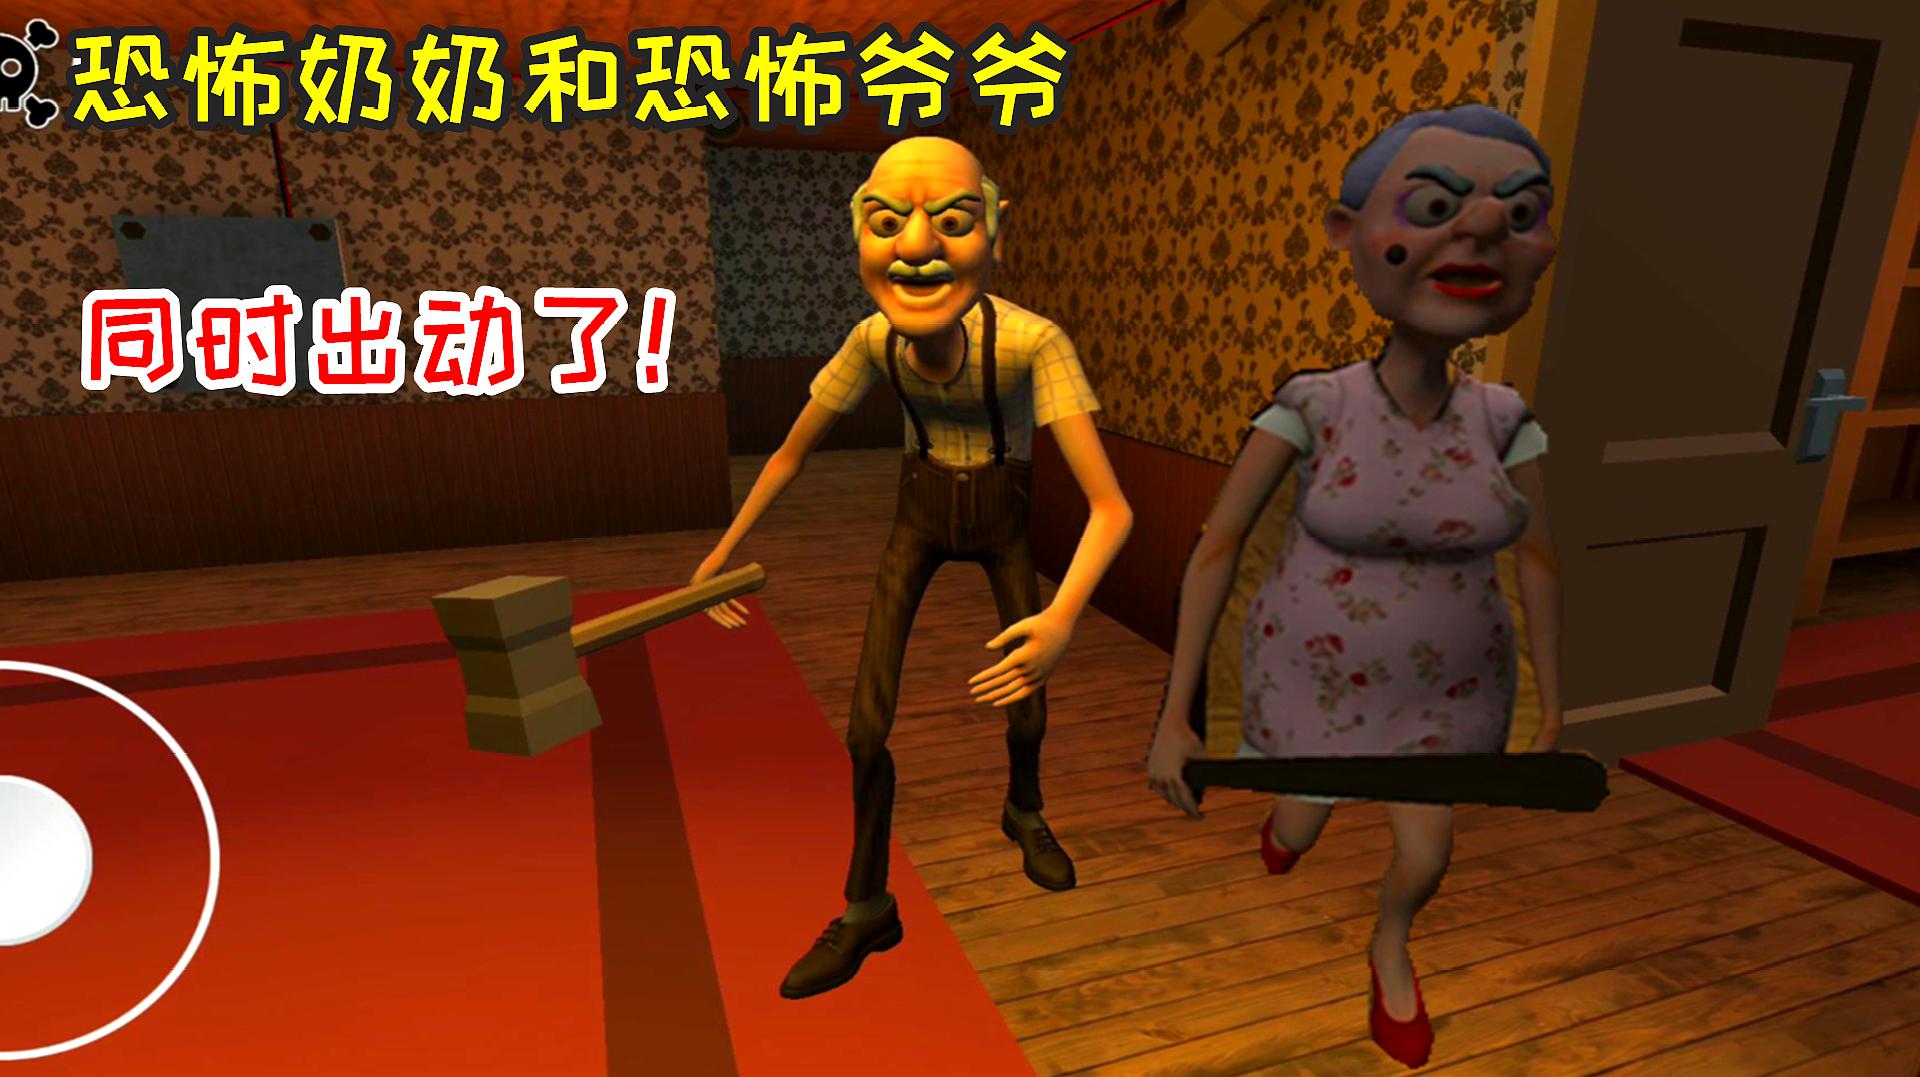 恐怖奶奶和恐怖爷爷竟然出现在同一款游戏里,你们见过吗?